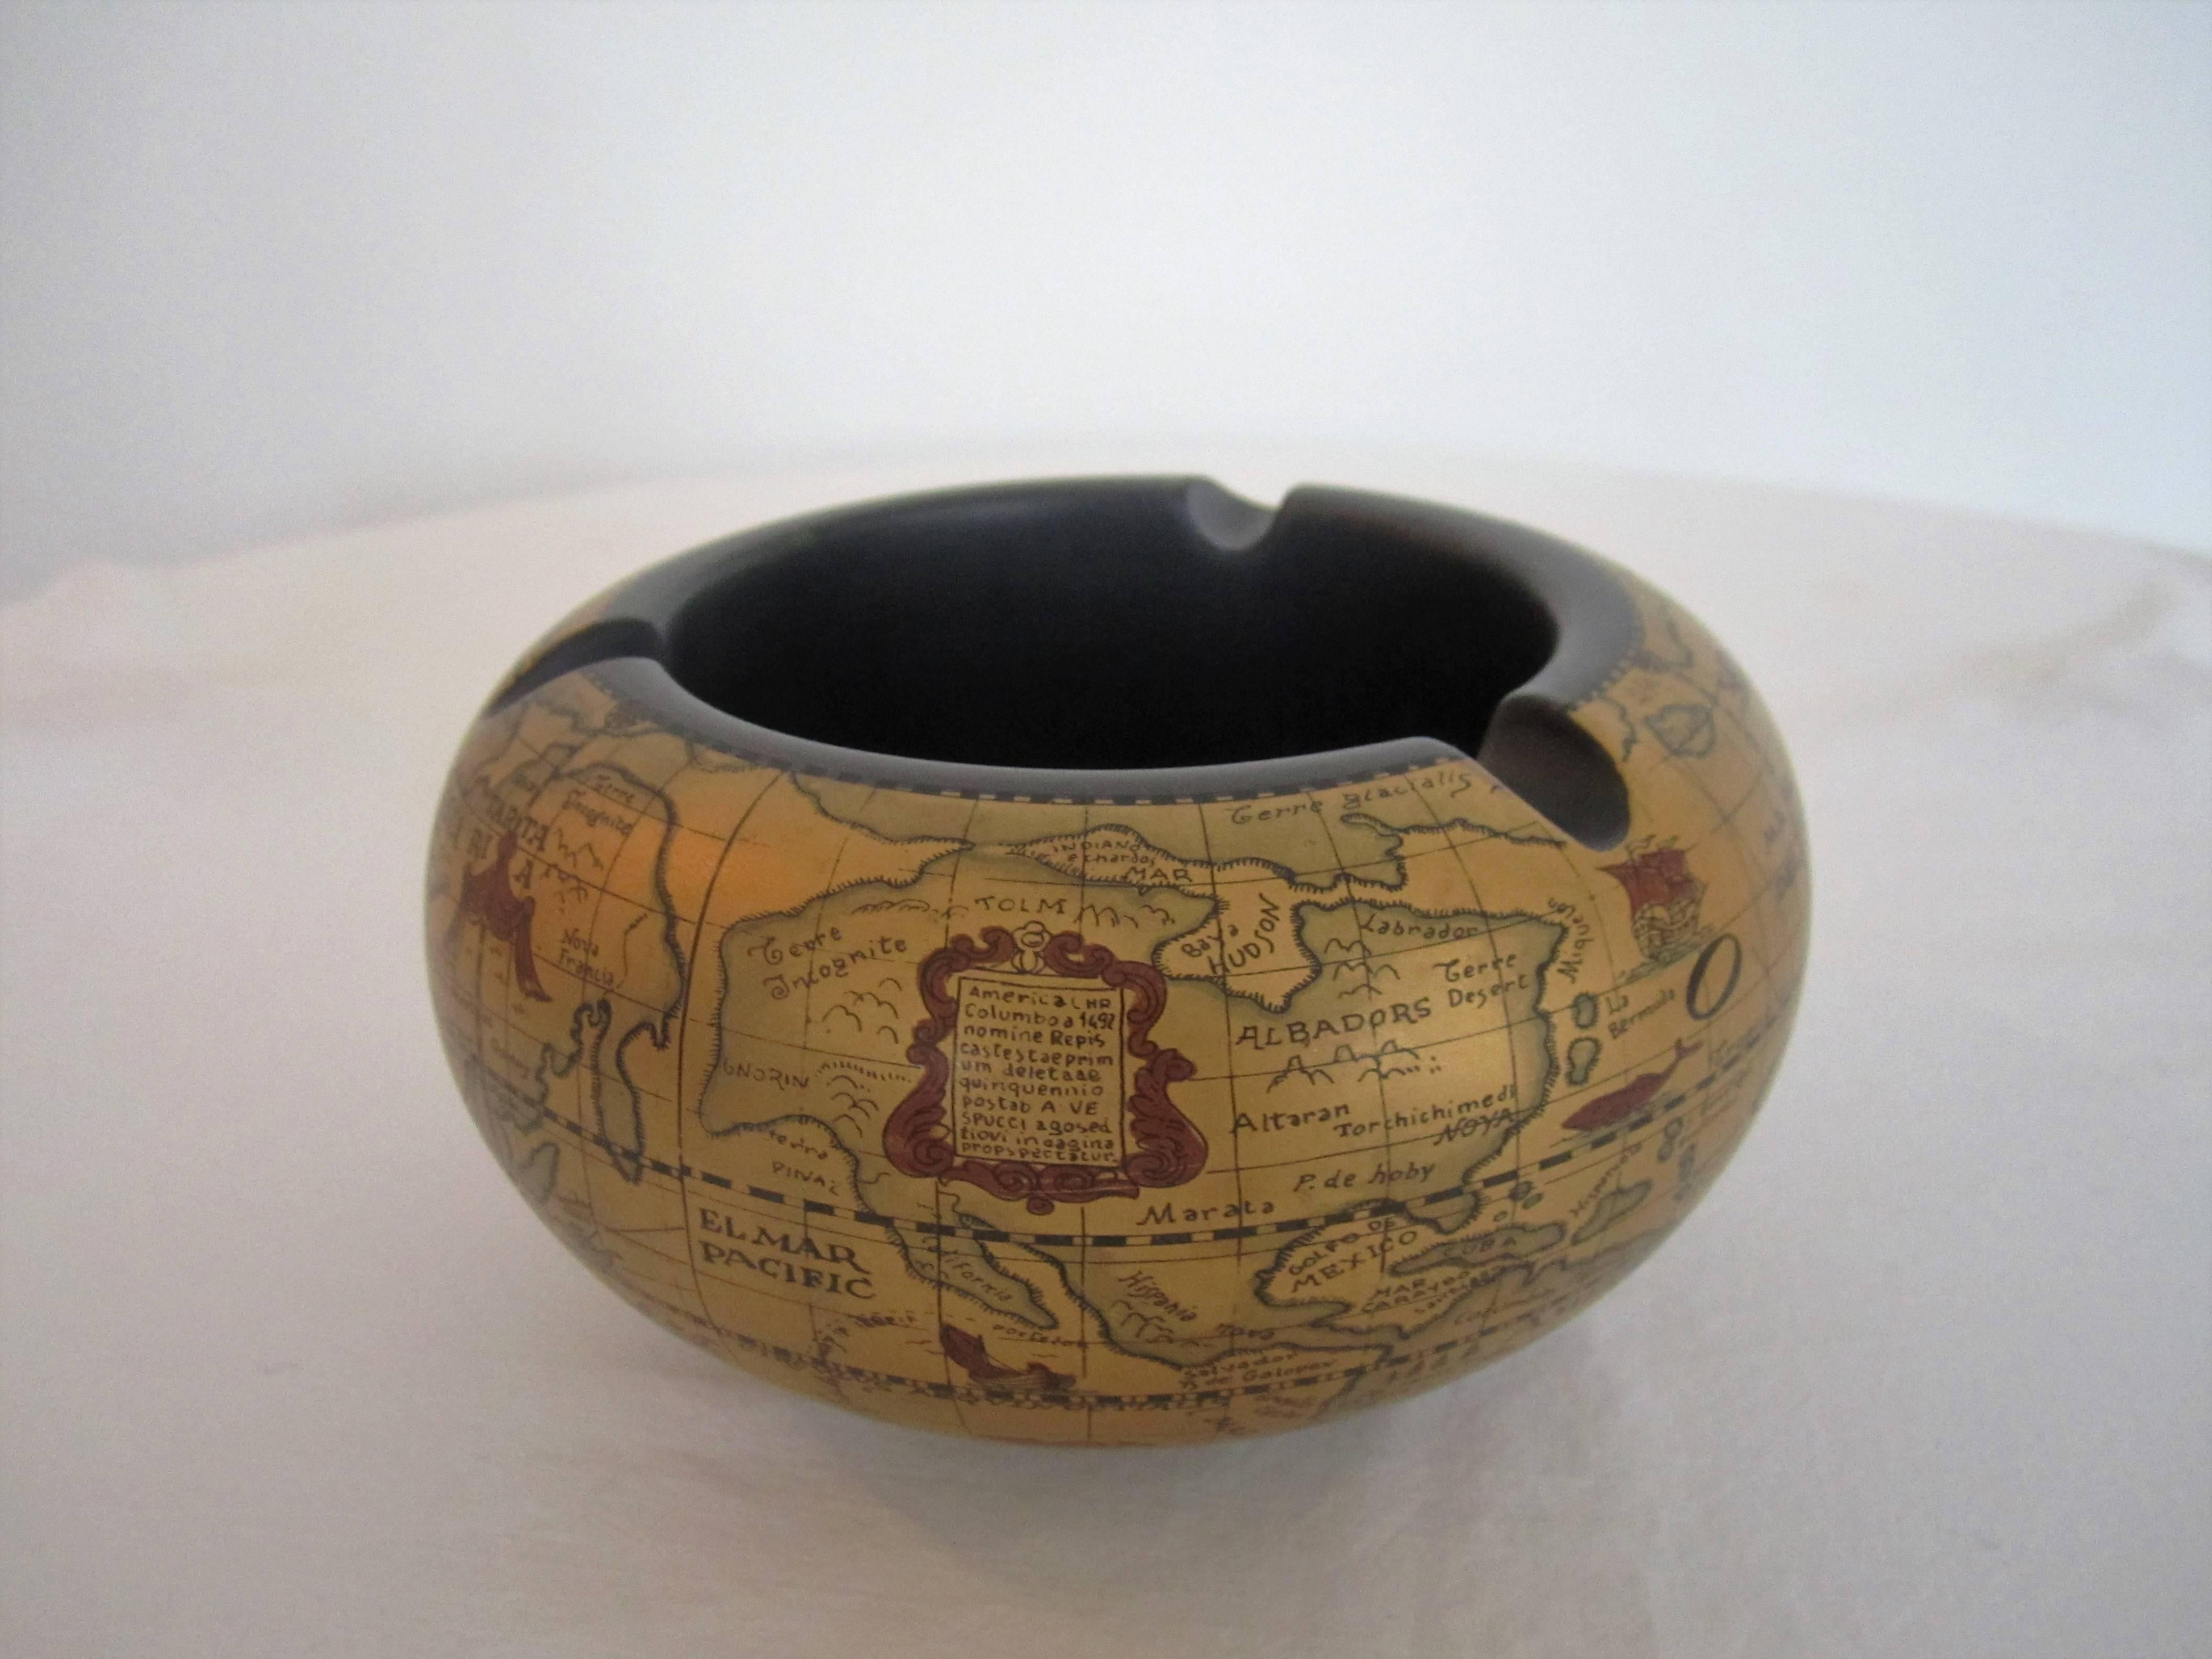 20th Century World Globe Ashtray or Bowl from Italy